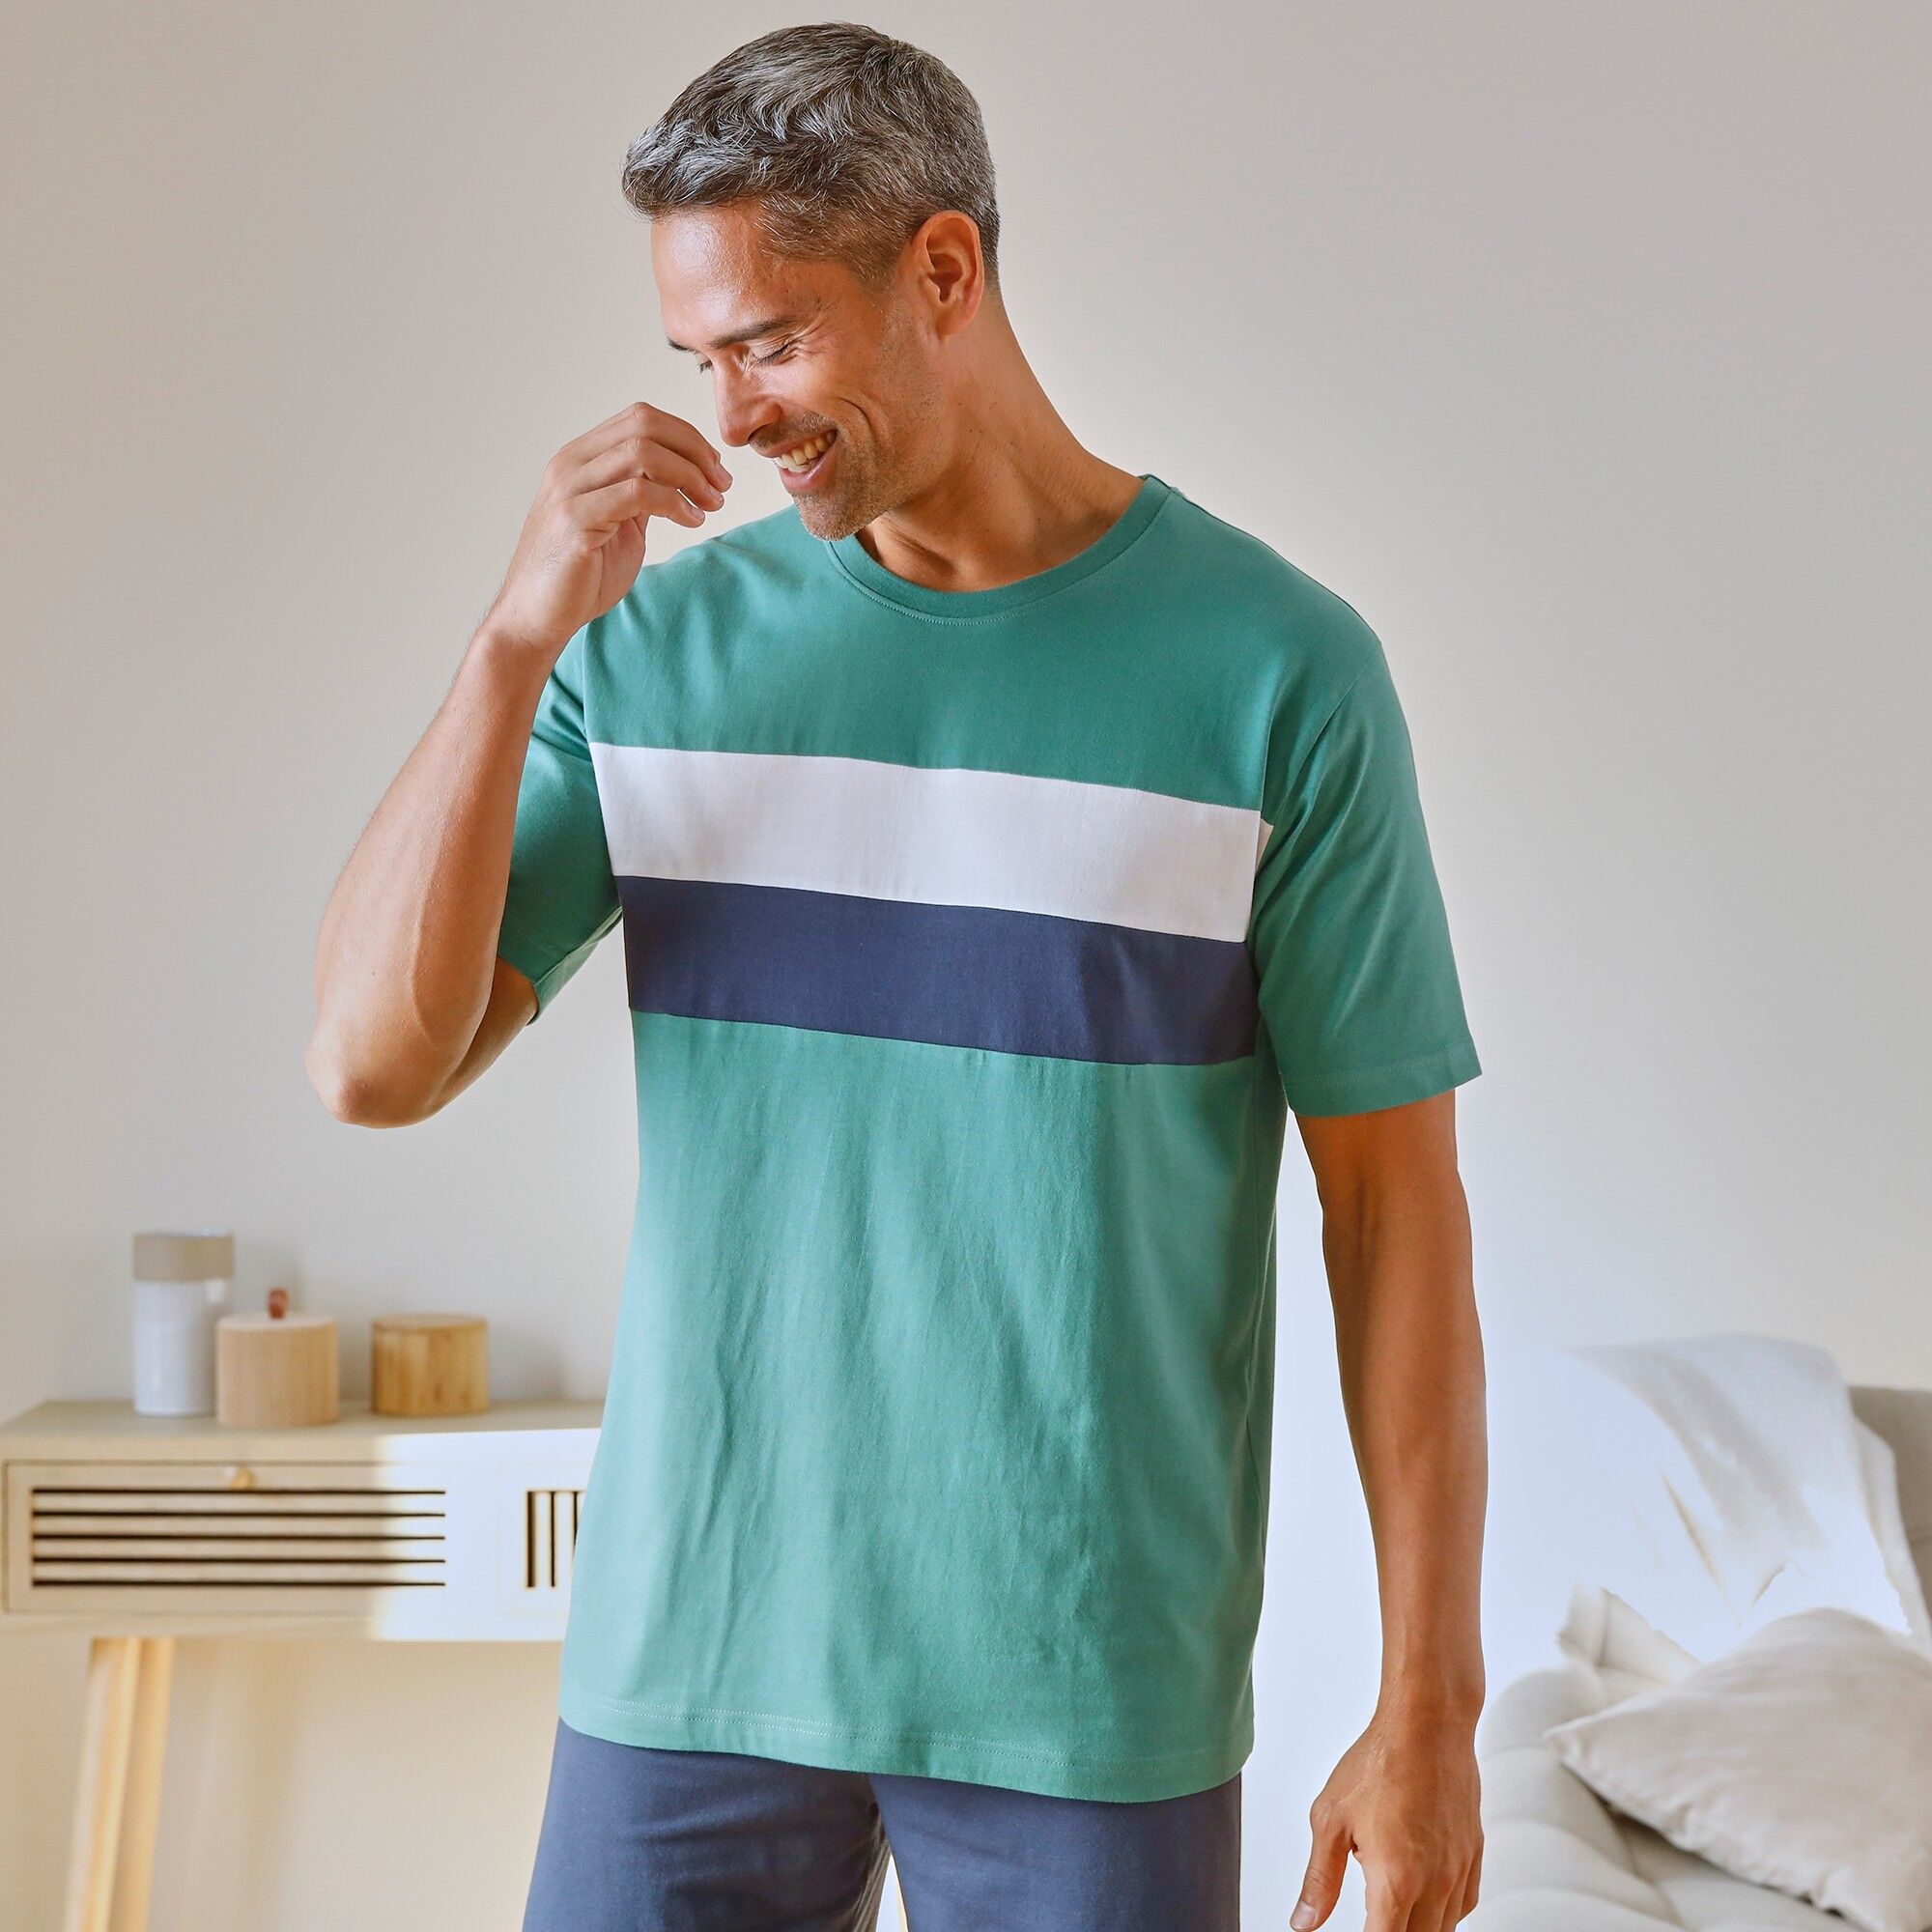 T-shirt pyjama manches courtes vert - BlancheporteAgréable à porter avec sa maille coton souple et douce, moderne avec ses rayures placées : le T-shirt manches courtes se coordonne au bas que vous souhaitez... Vous le trouverez facilement sur notre site p